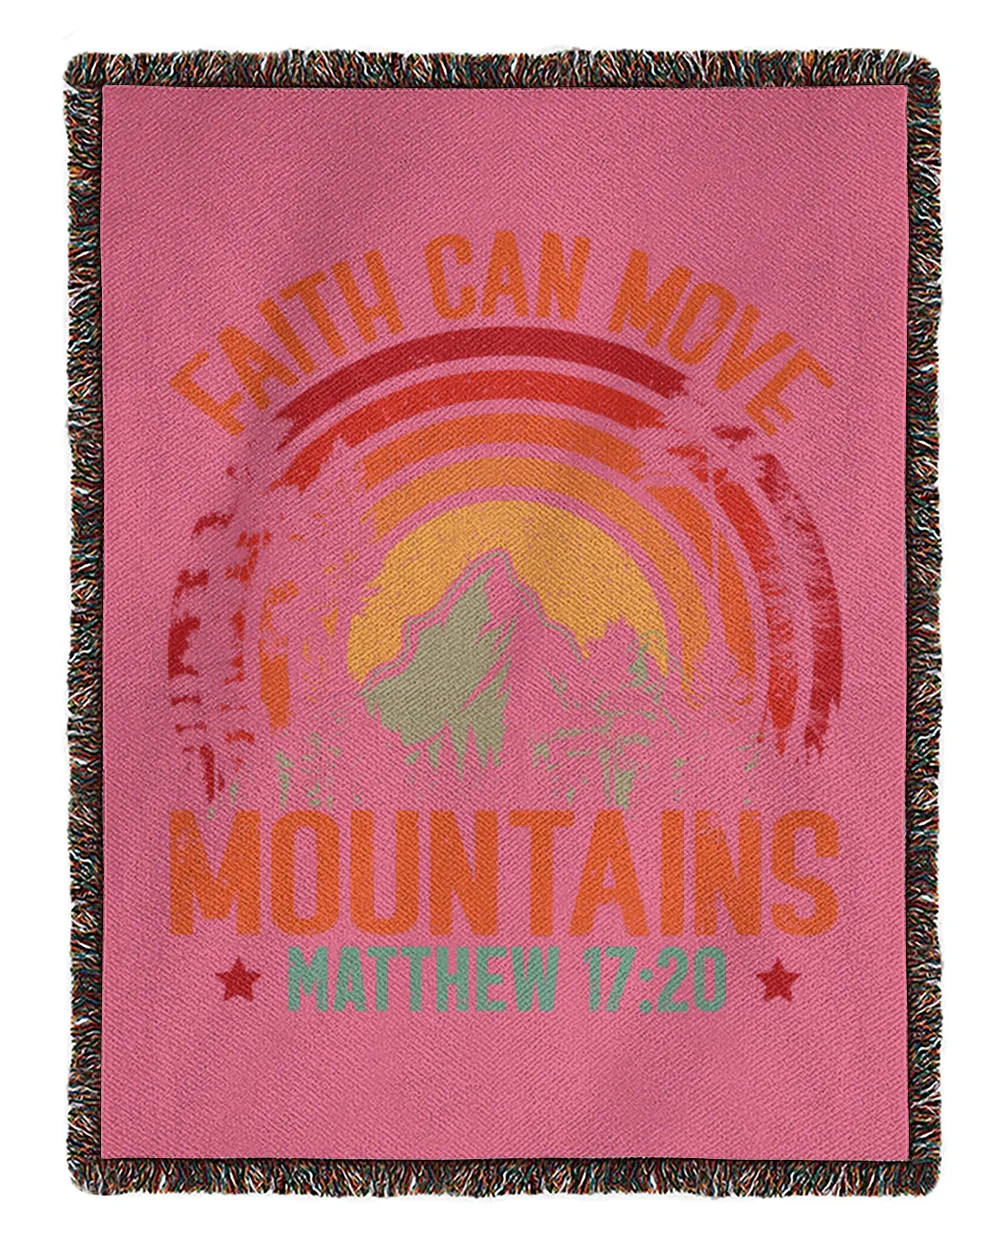 Faith Can Move Mountains